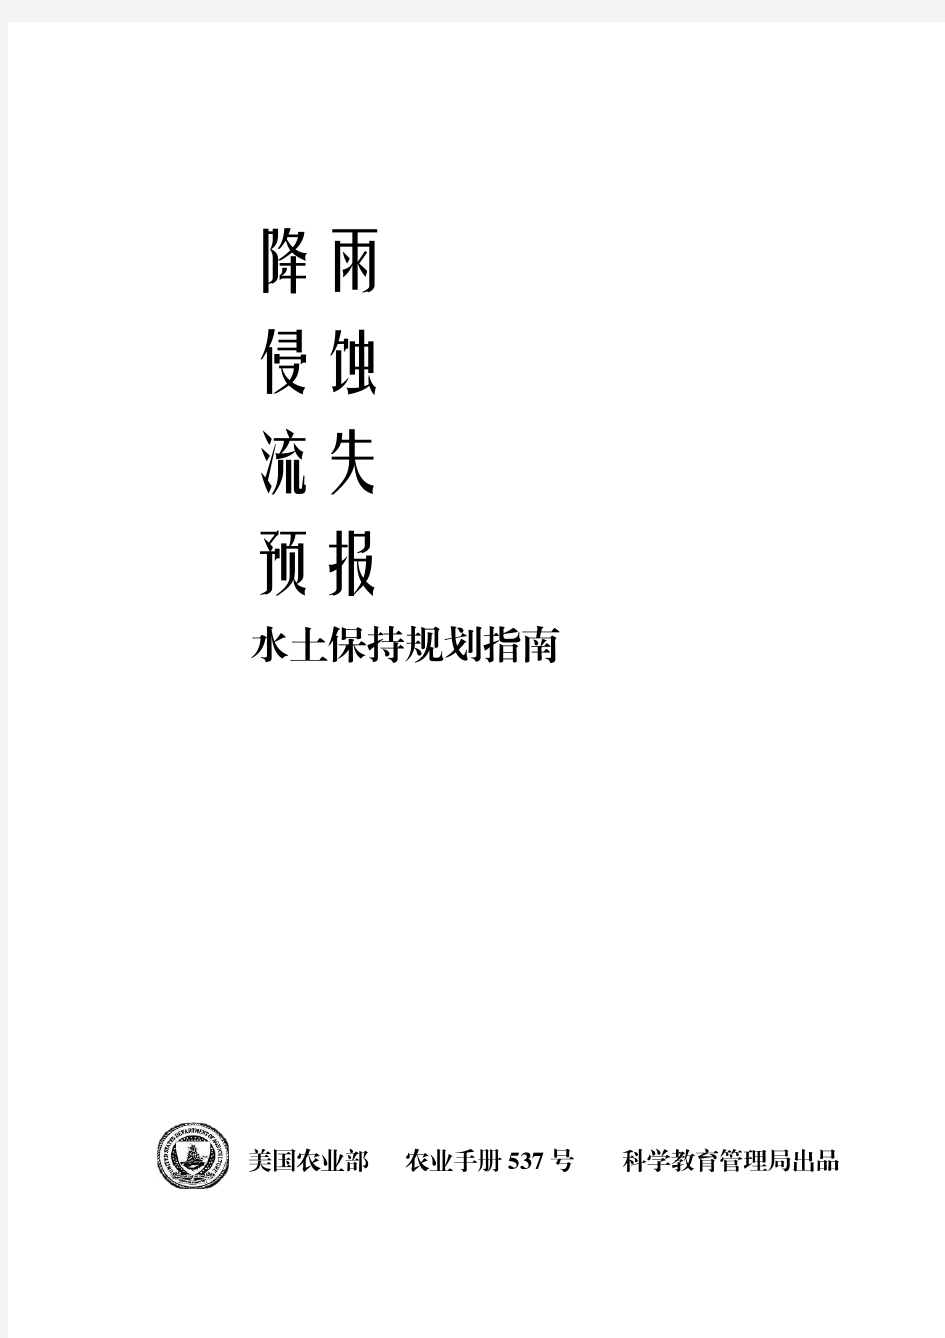 美国农业部537手册(通用土壤流失方程USLE说明书)中文第一版